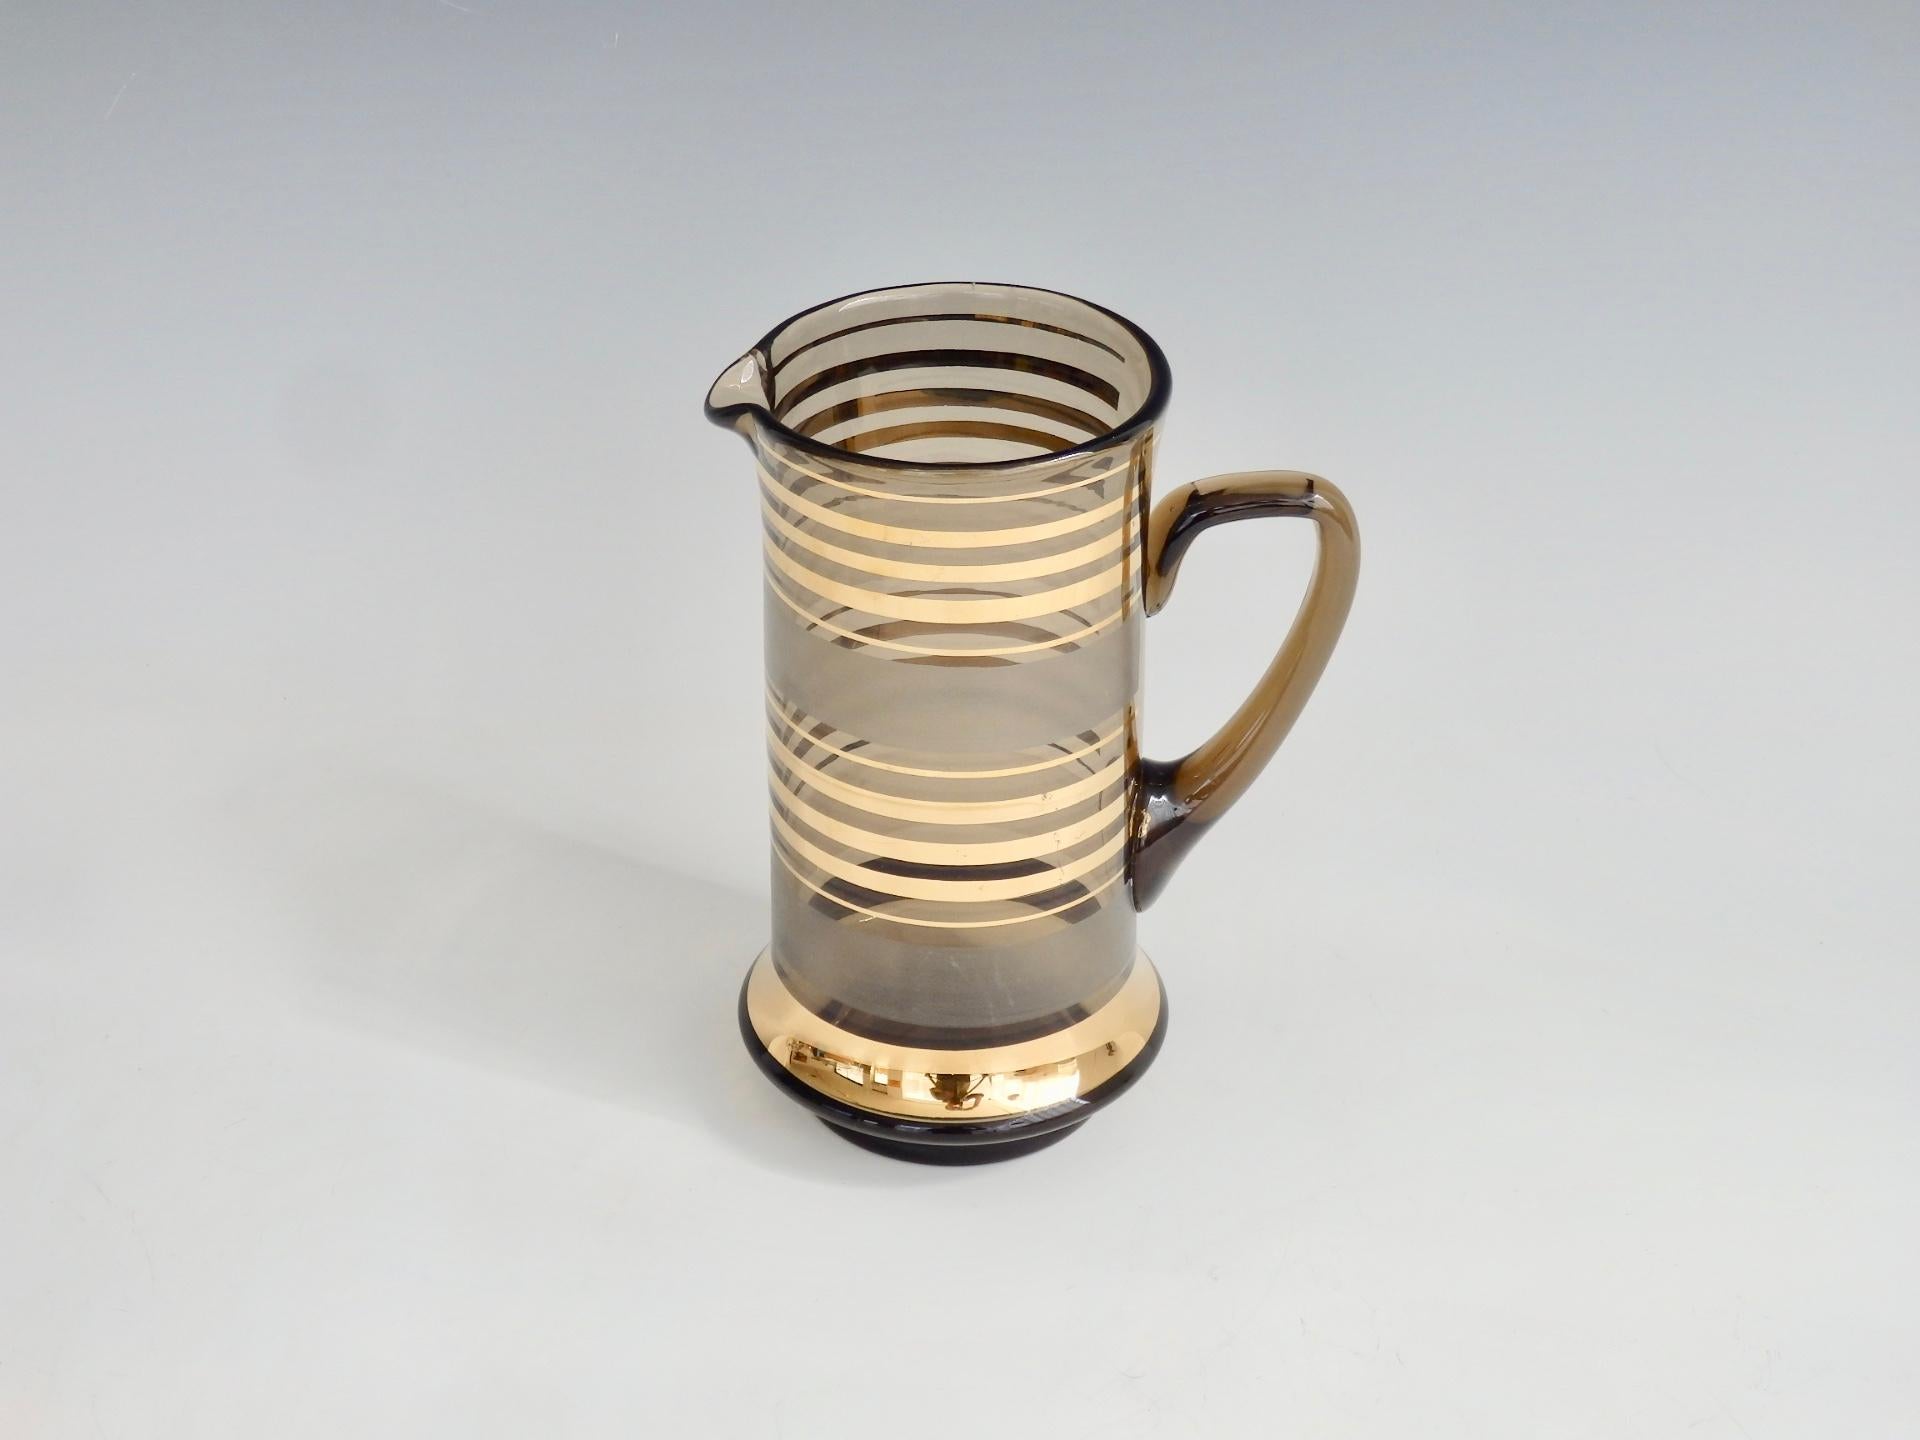 Ein goldgestreifter Cocktailkrug aus Glas aus der Jahrhundertmitte der 1960er Jahre. Dieser Cocktailkrug ist ein Schmuckstück mit reichhaltigen zylindrischen Streifen in Gold und mattierten Streifen auf Rauchglas, die mit einem polierten Boden